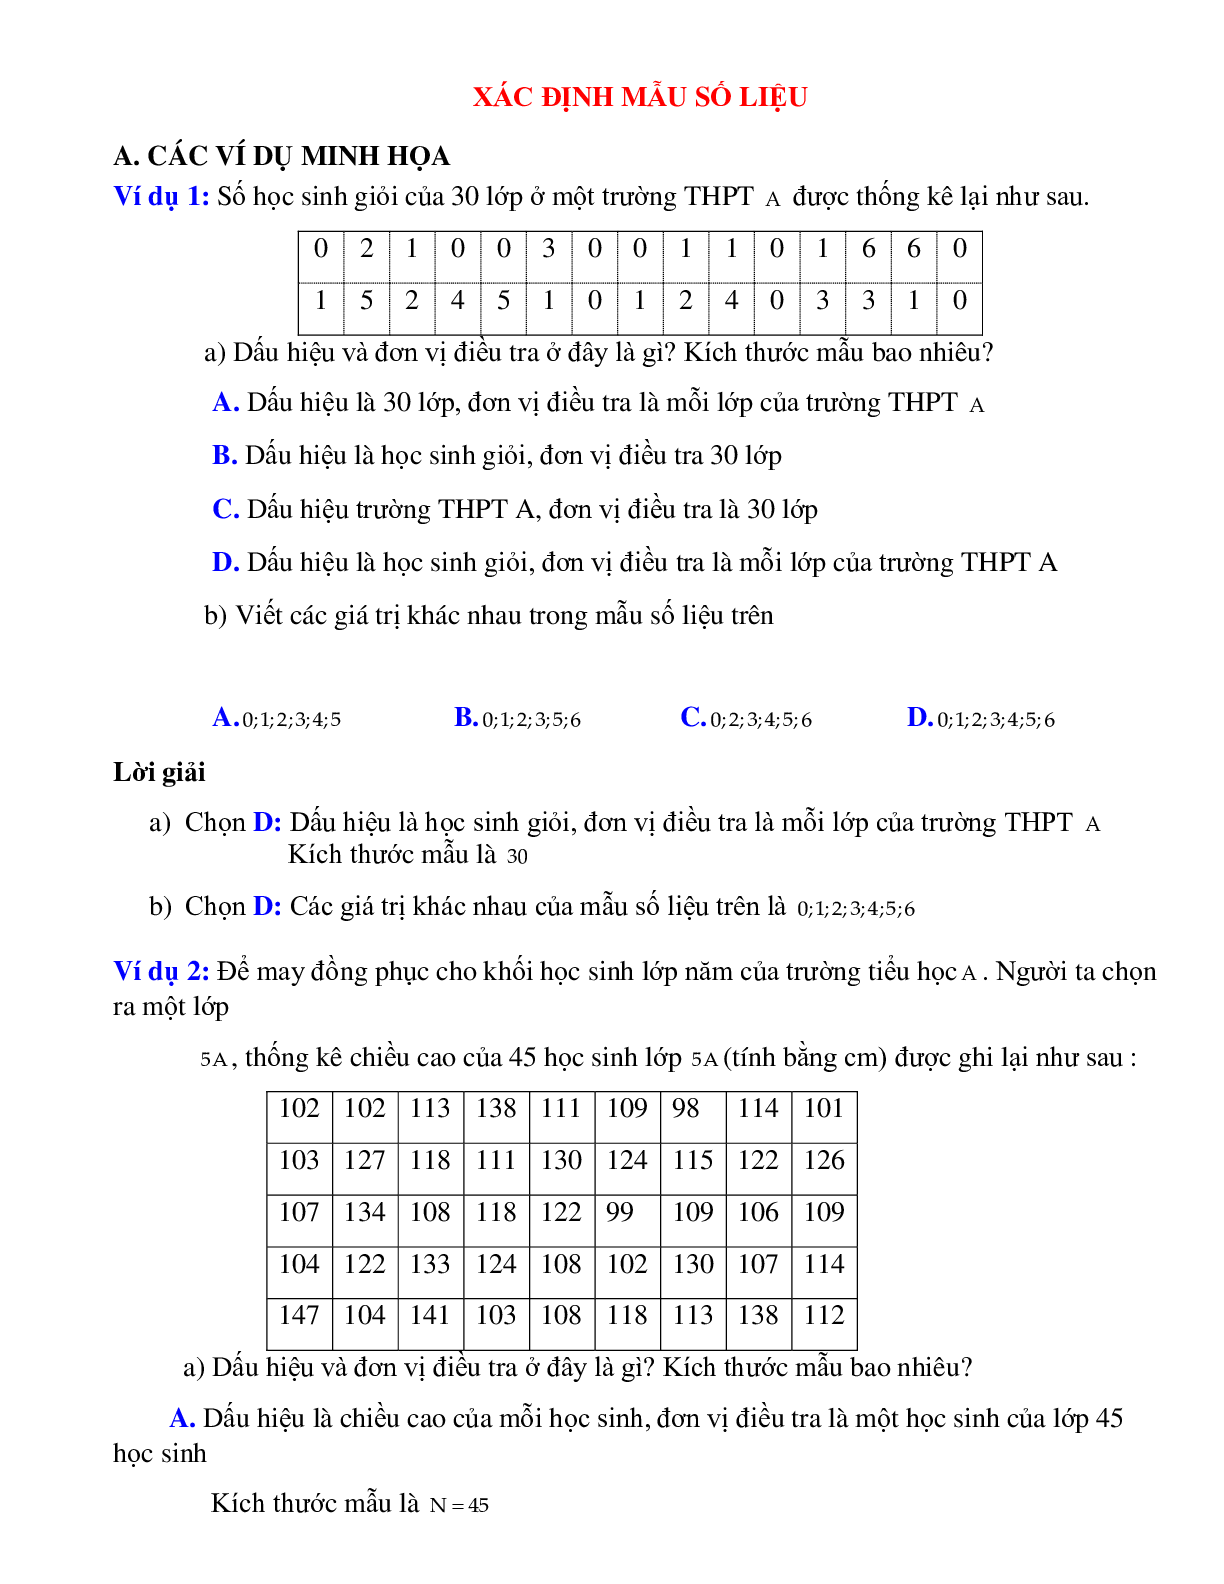 Bài tập tự luyện Xác định mẫu số liệu có đáp án (trang 1)